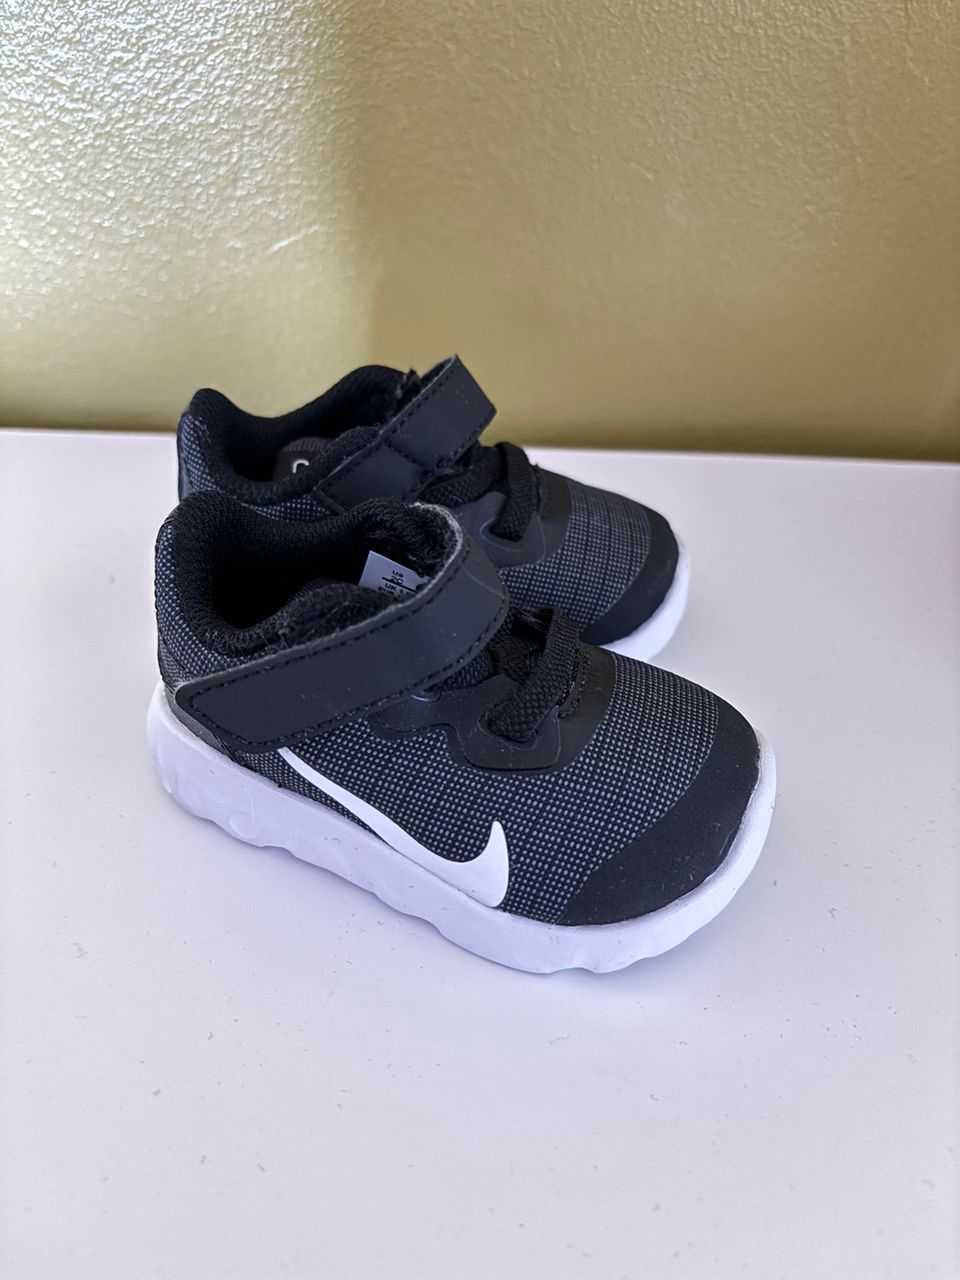 Nike vauvan kenkä, koko 17